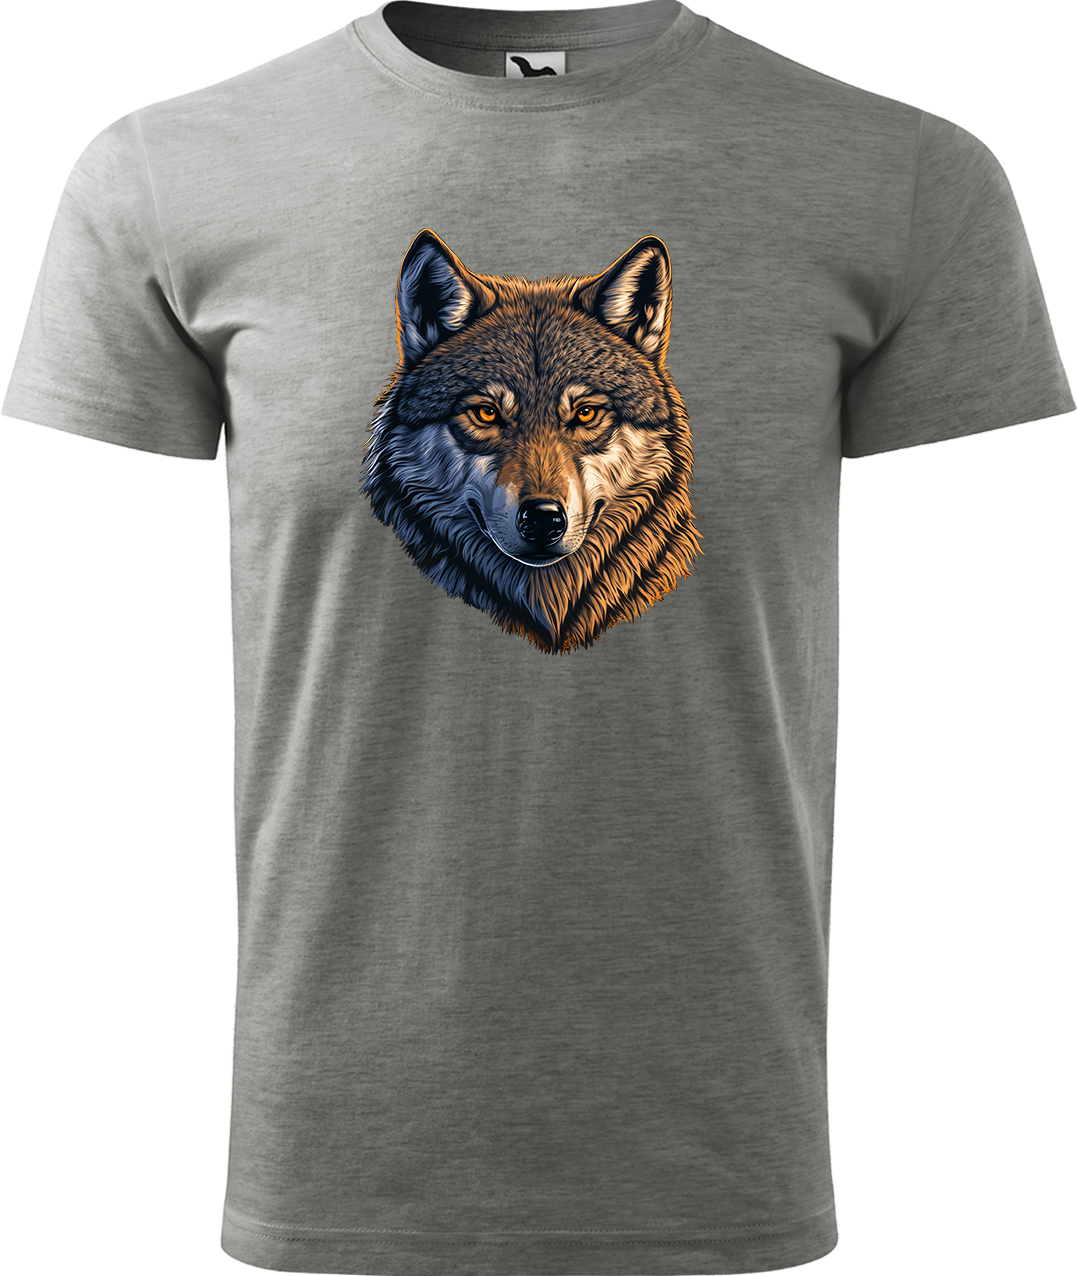 Pánské tričko s vlkem - Hlava vlka Velikost: L, Barva: Tmavě šedý melír (12), Střih: pánský